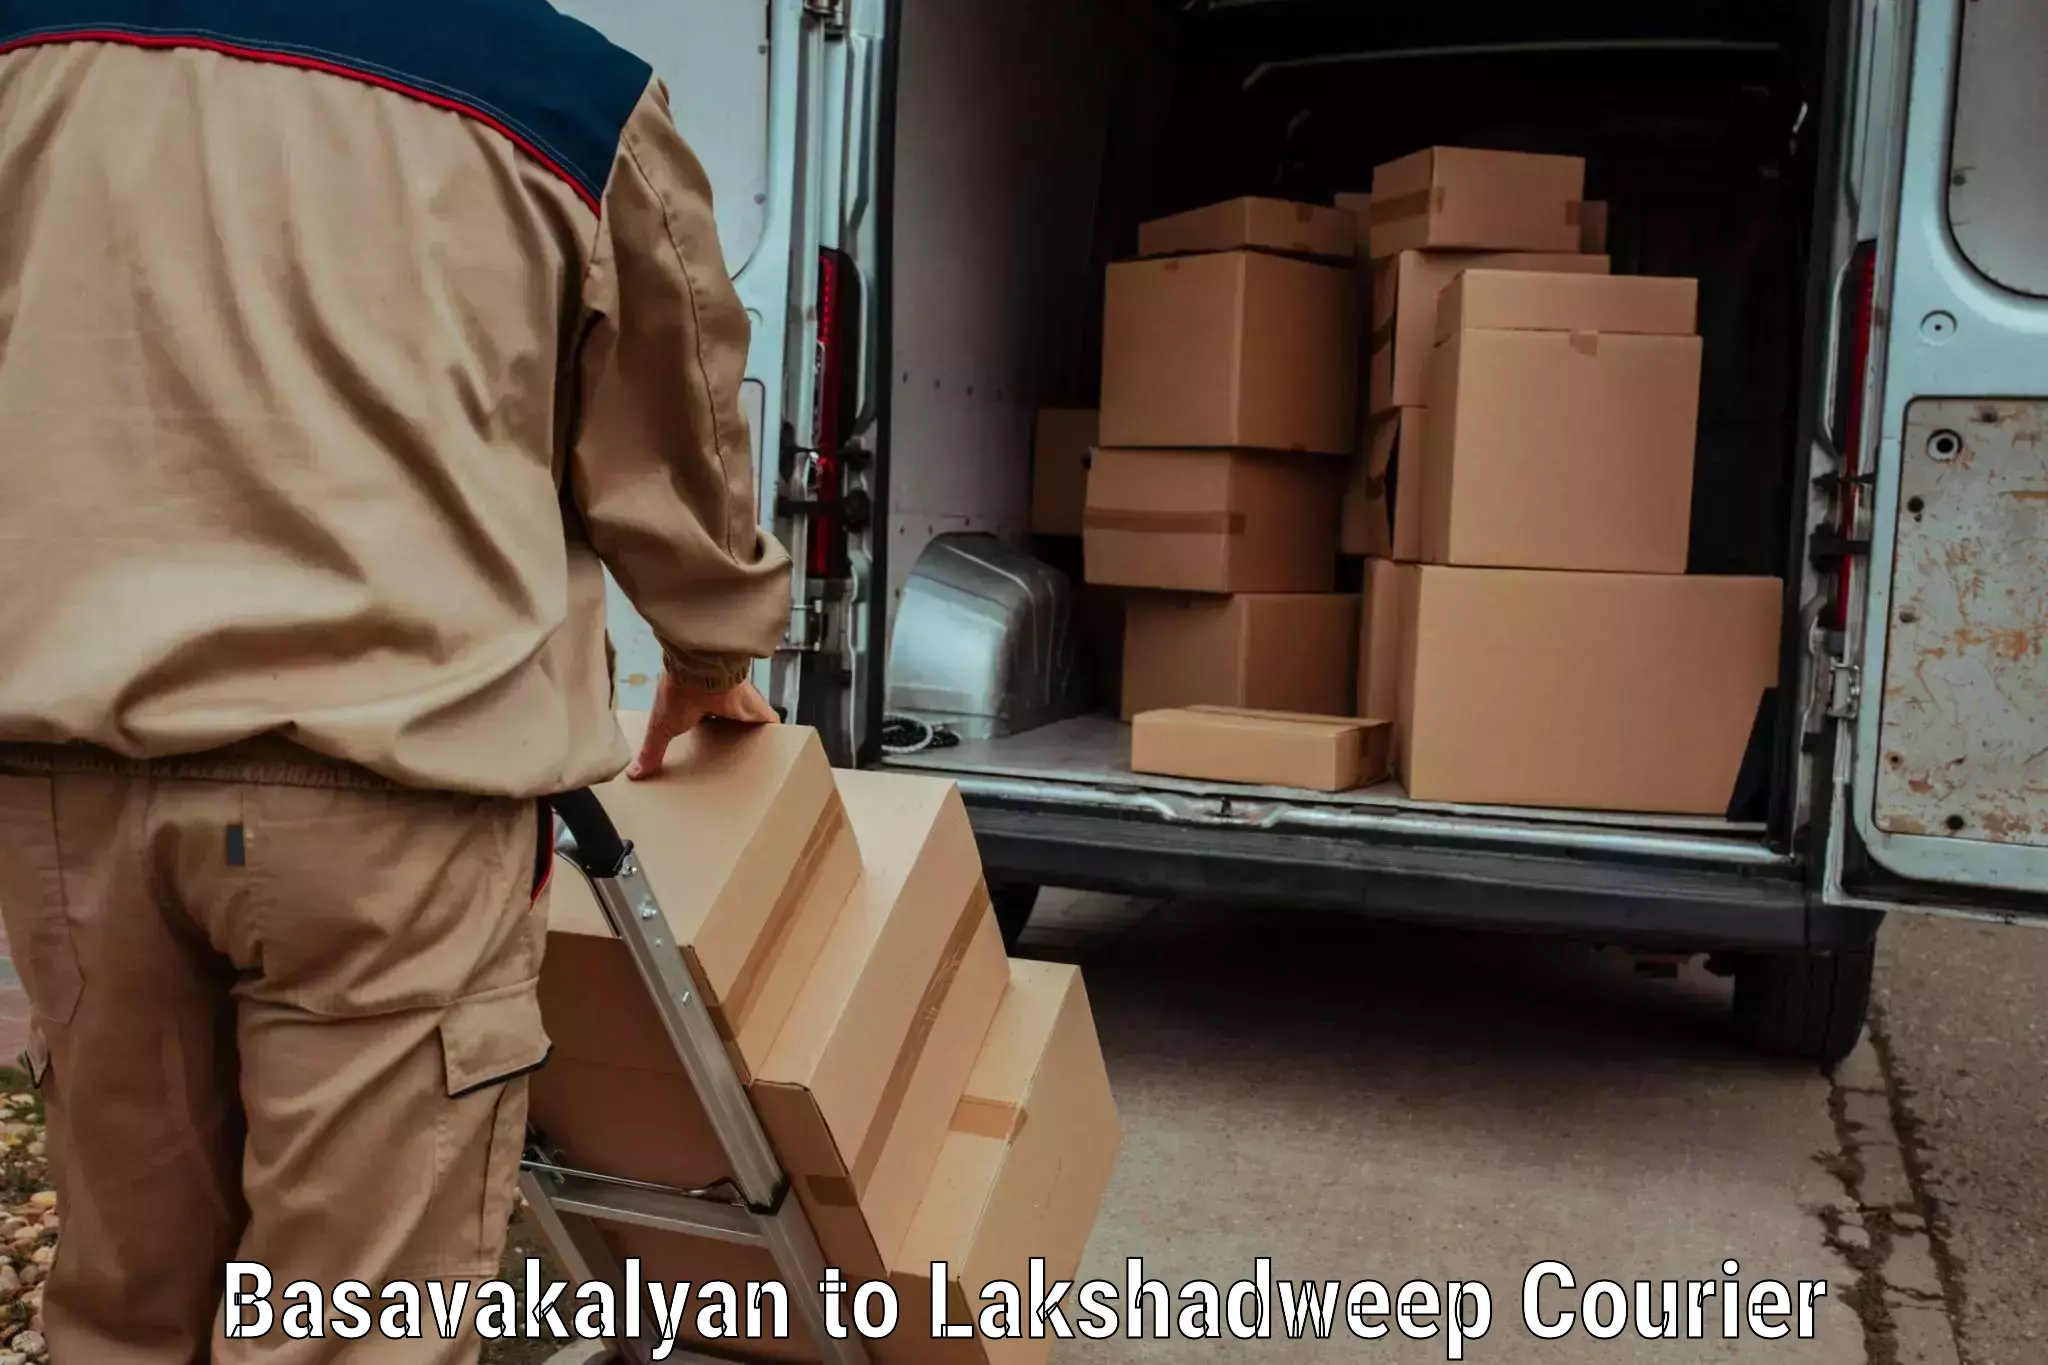 Easy return solutions Basavakalyan to Lakshadweep